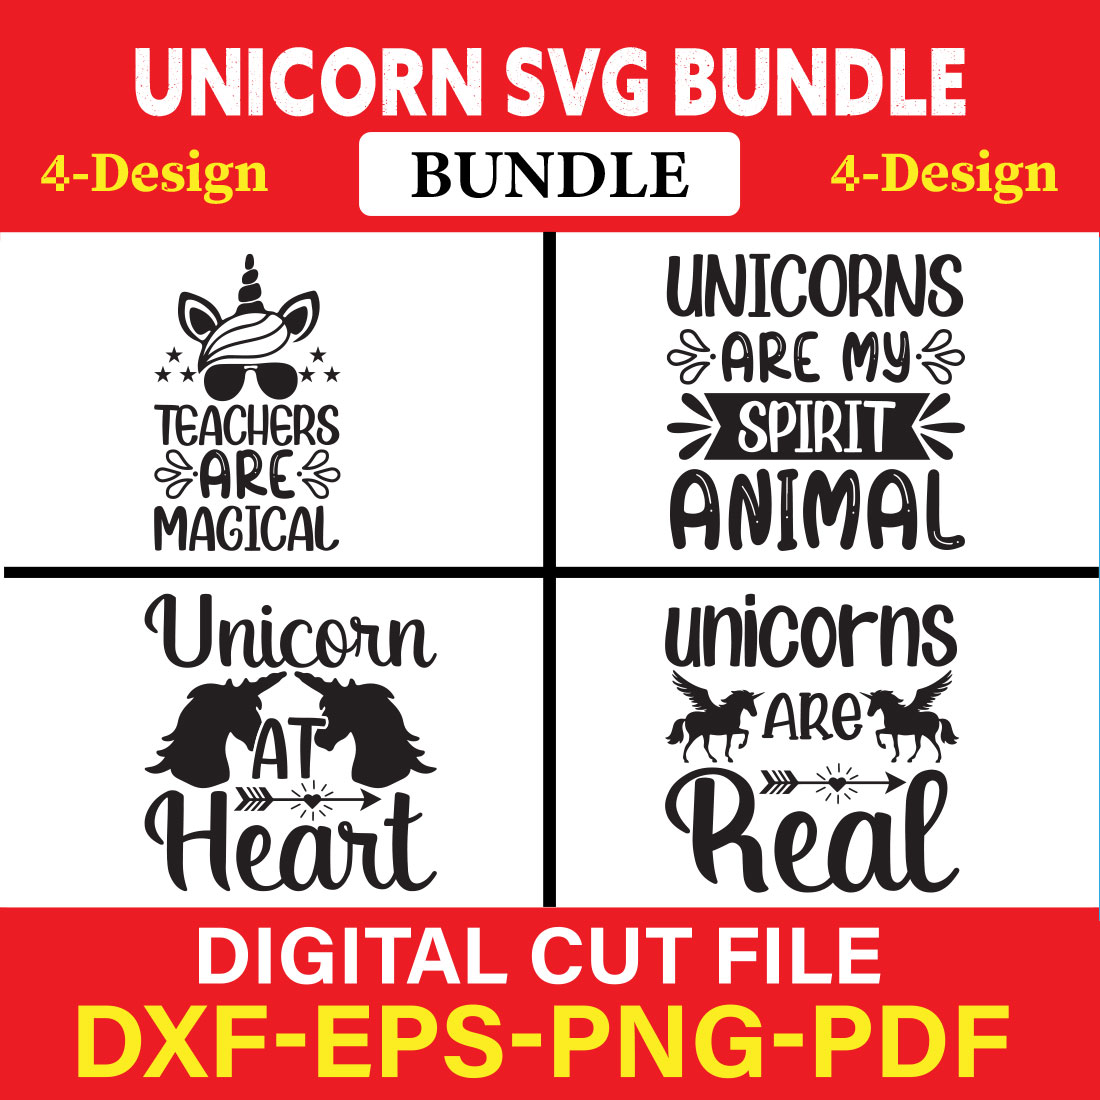 Unicorn T-shirt Design Bundle Vol-5 cover image.